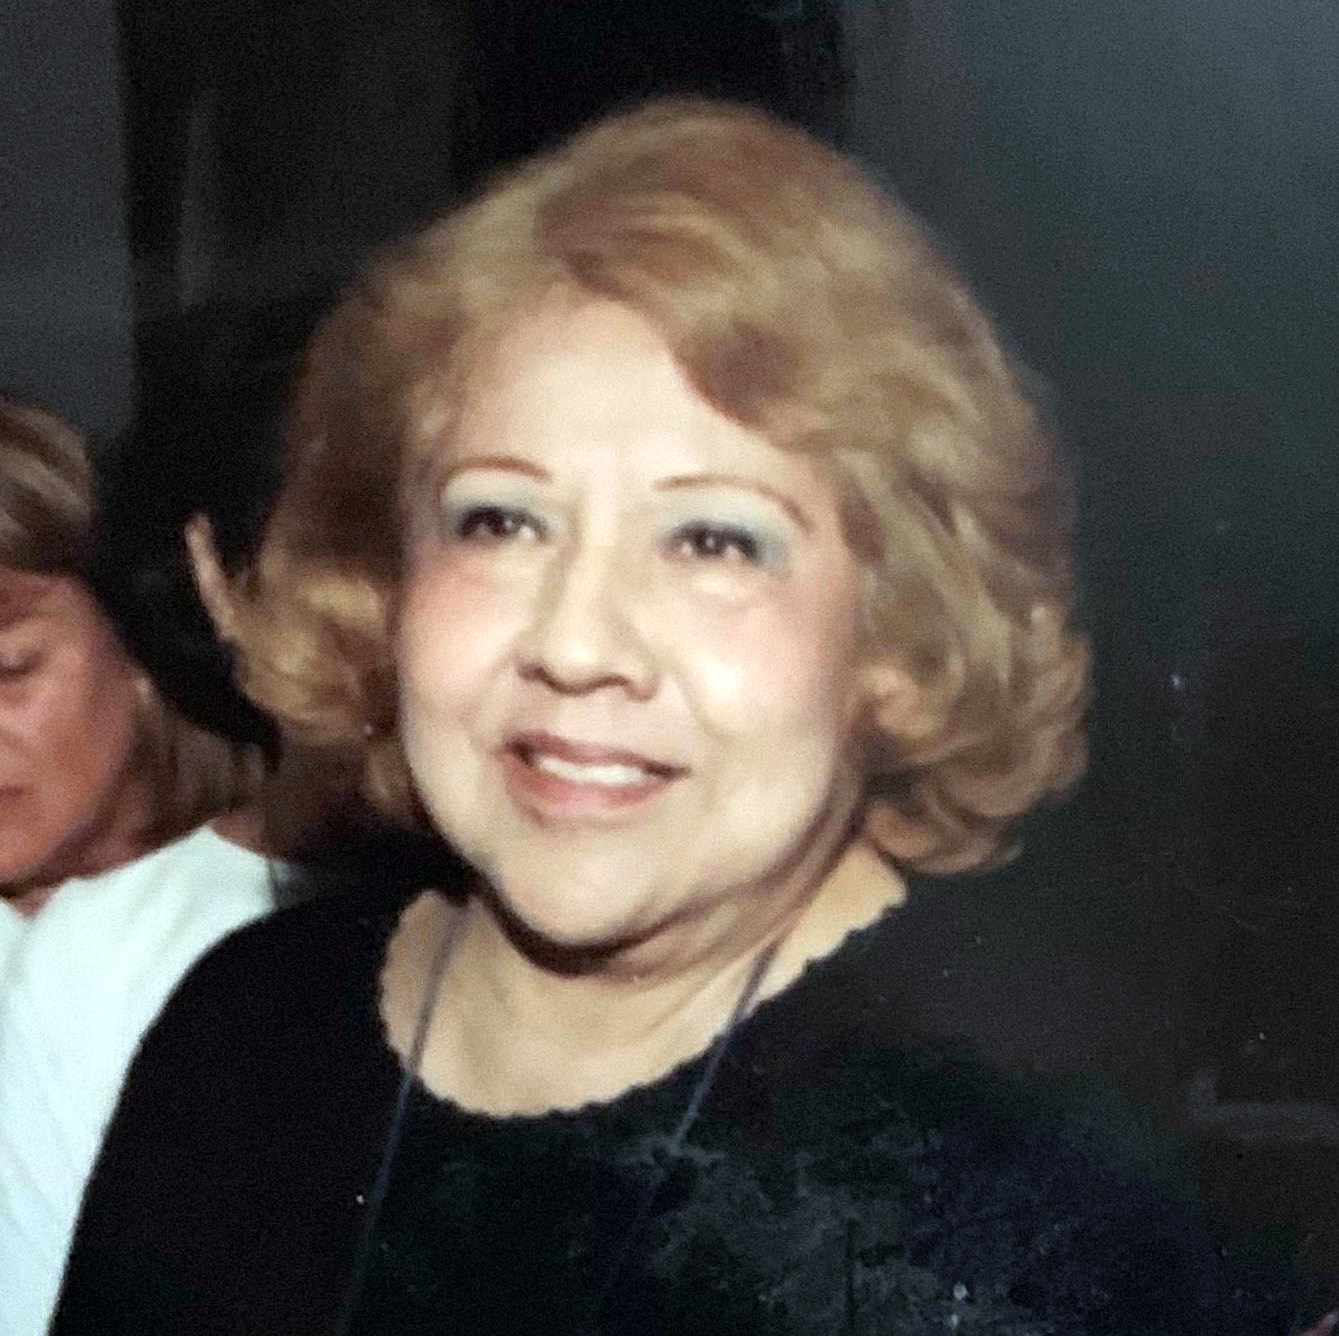 Obituary of Antonia Banuelos - 02/19/2019 - From the Family